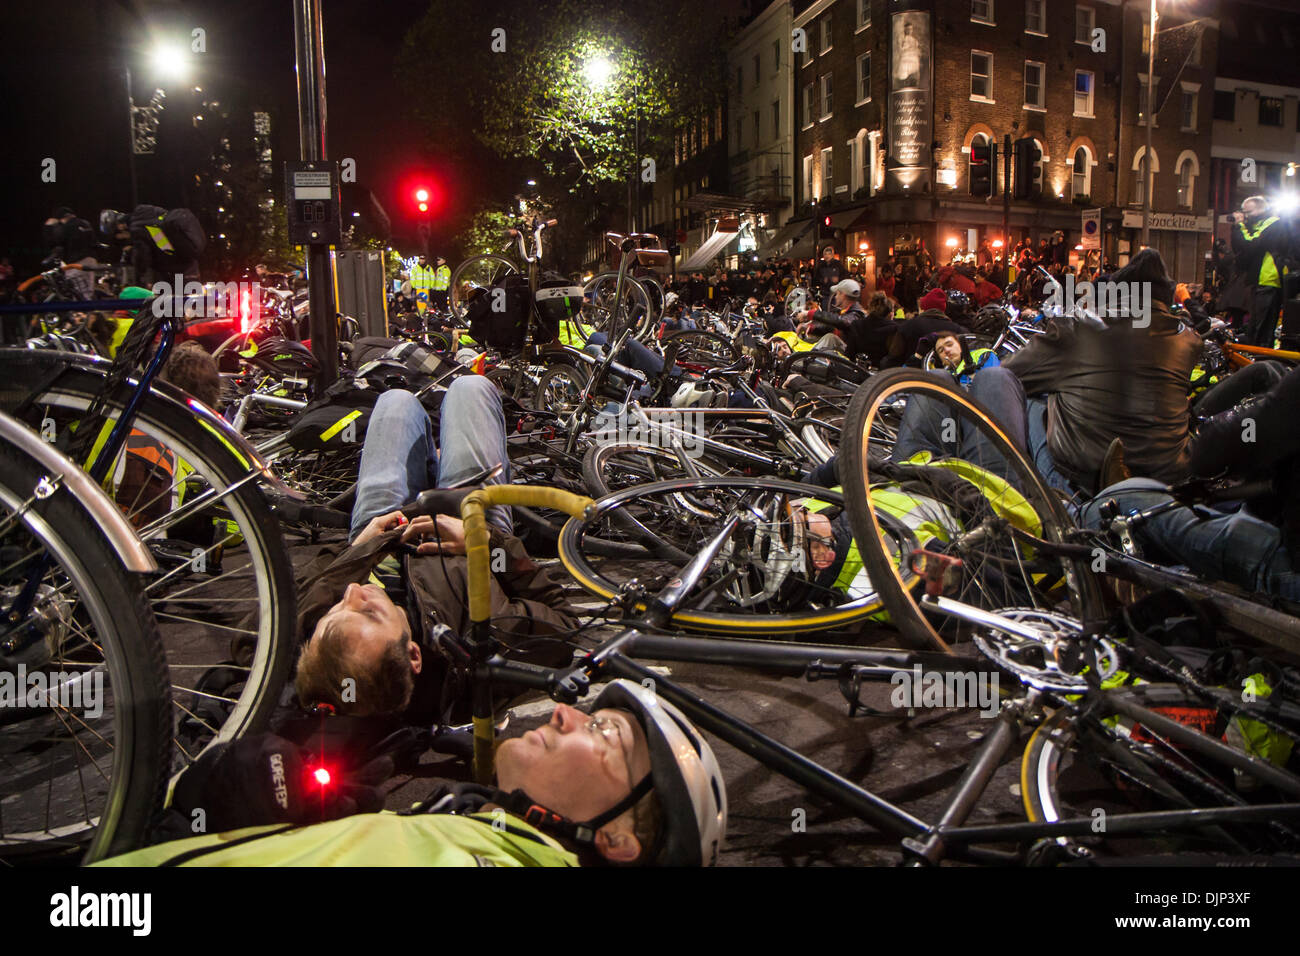 Londres, Reino Unido. El 29 de noviembre de 2013. Los manifestantes en un die-in fuera de Transporte de Londres, 29 de noviembre de 2013 Créditos: Zefrog/Alamy Live News Foto de stock